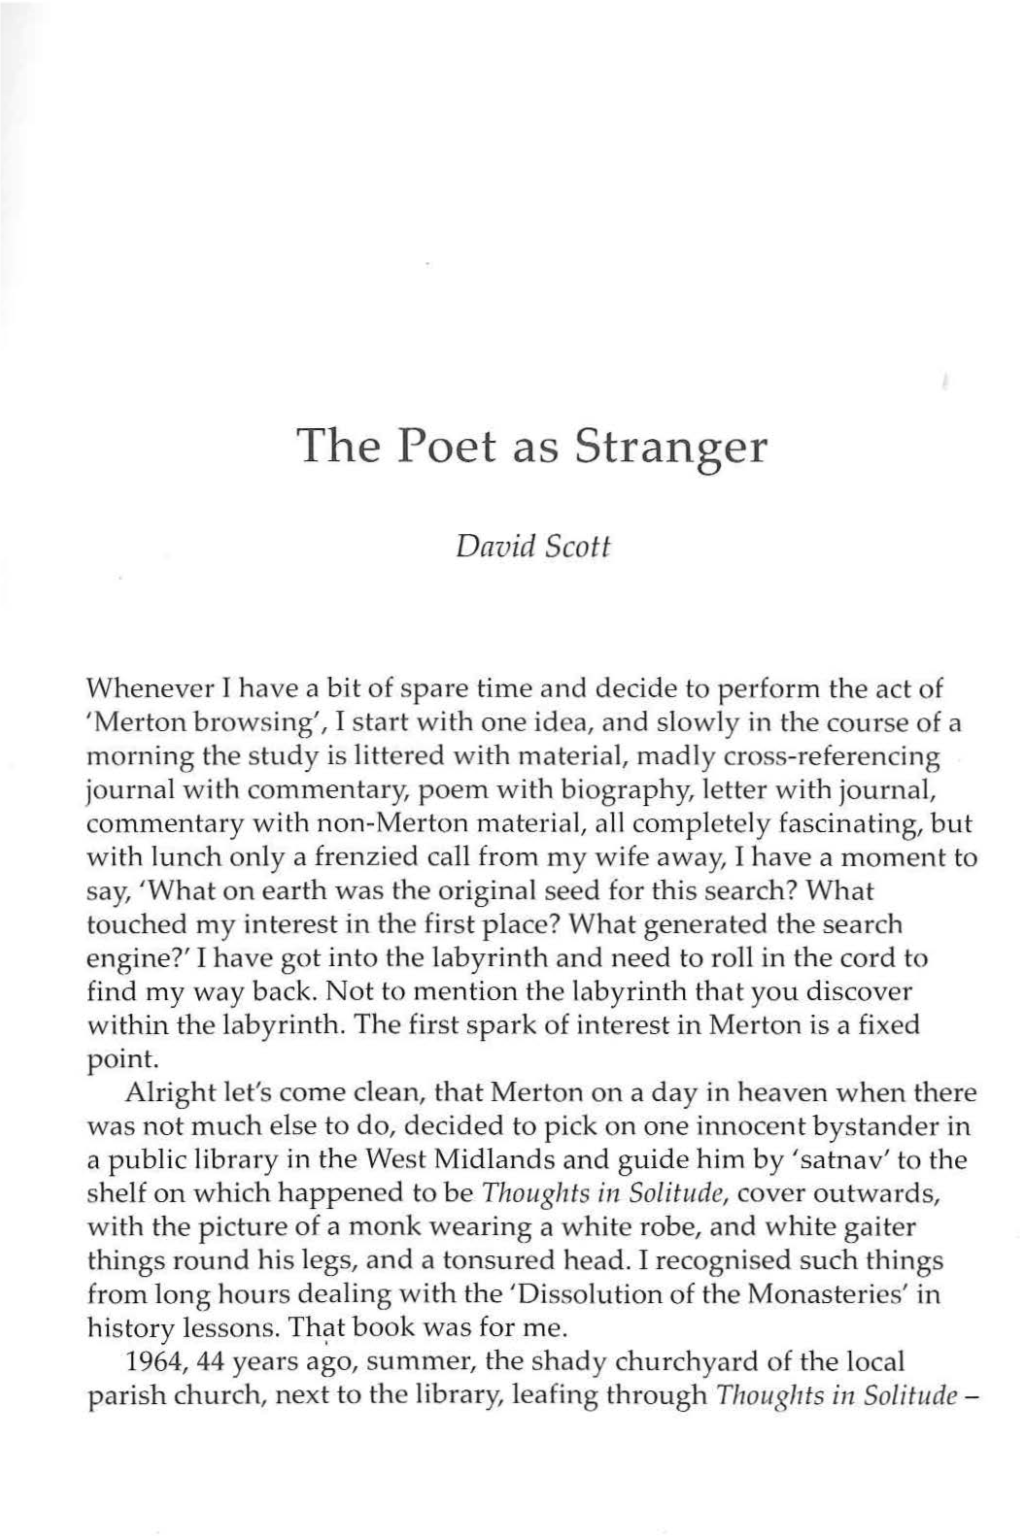 The Poet As Stranger